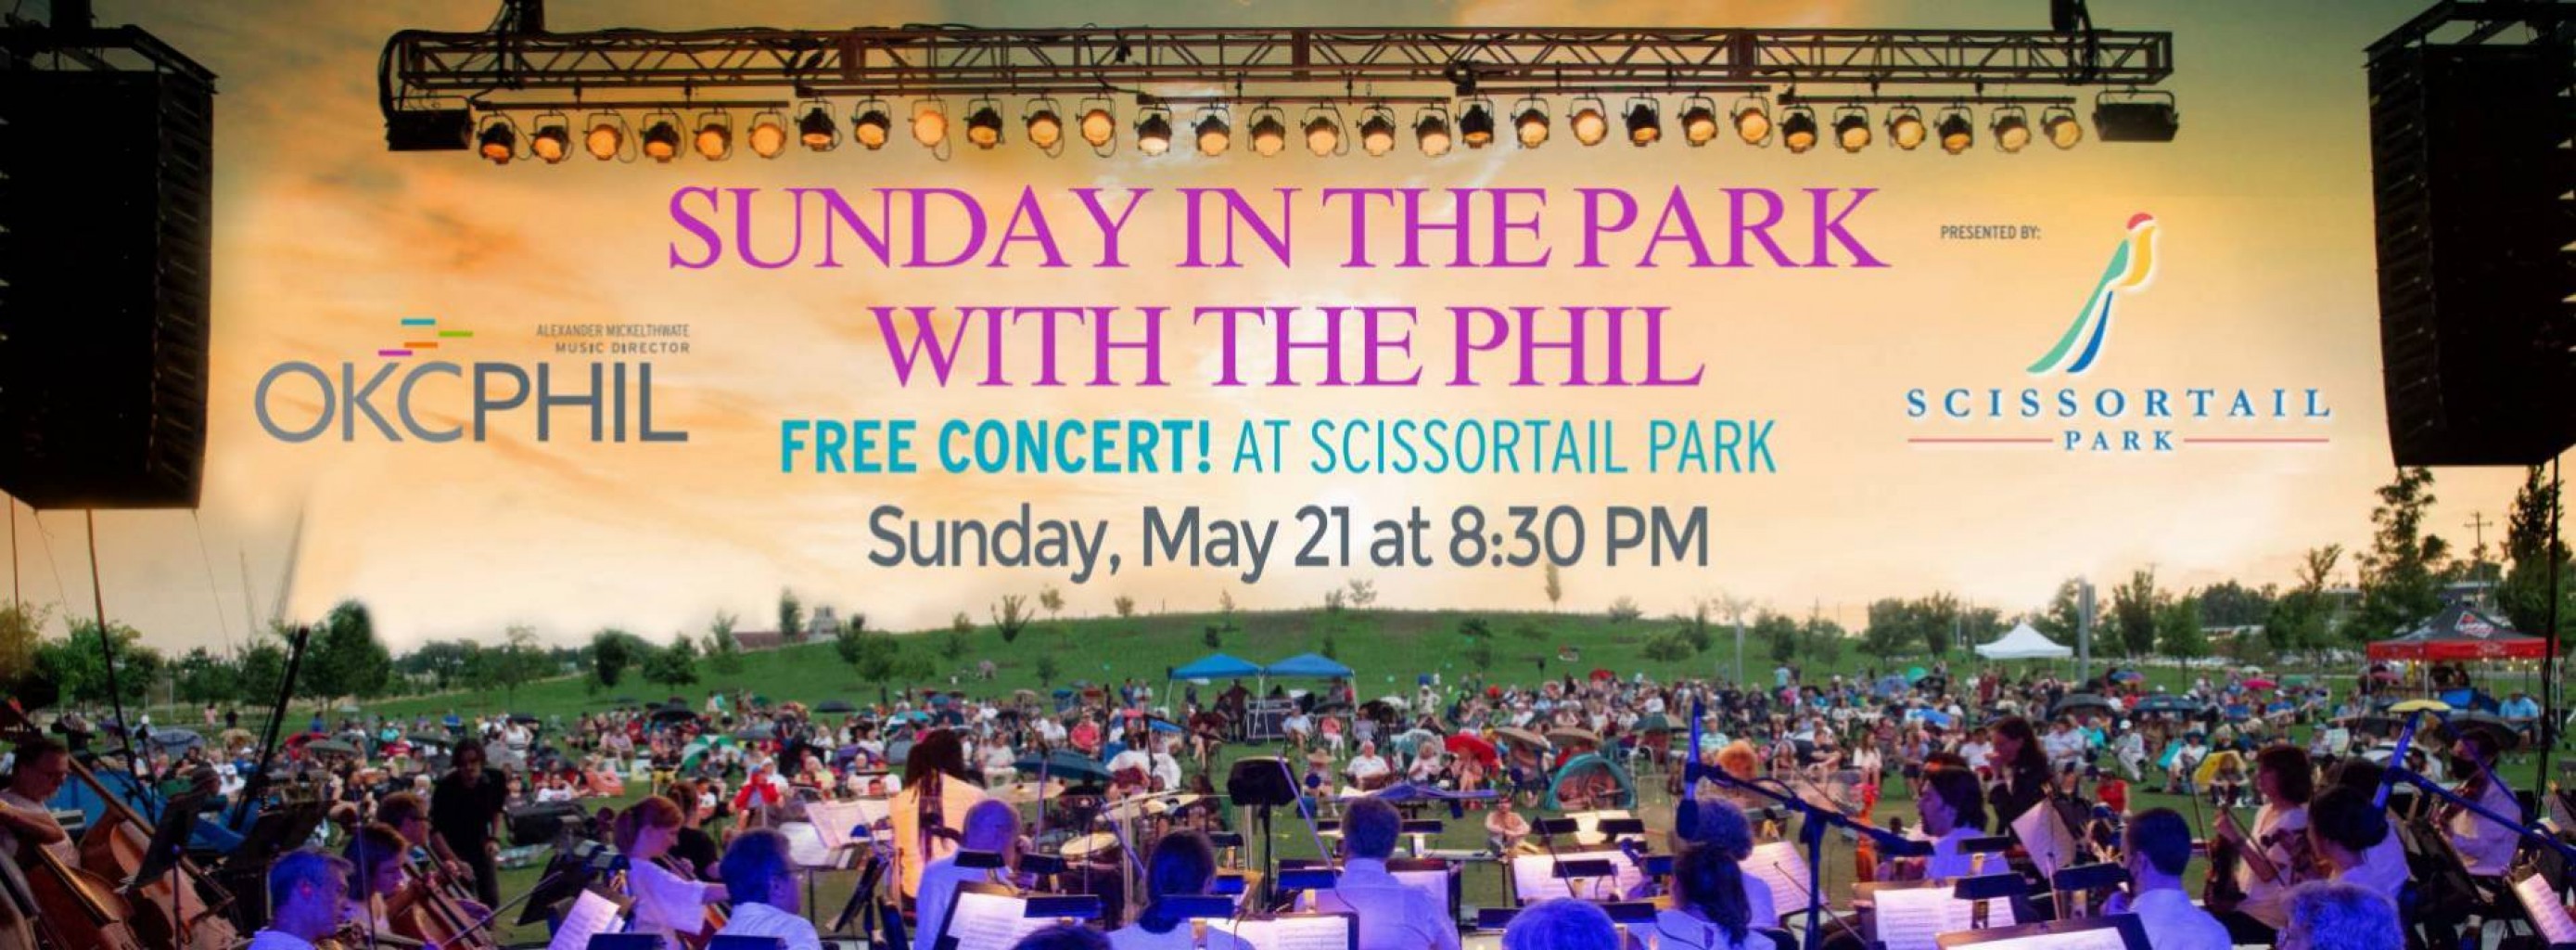 Filarmónica de Oklahoma City presenta concierto gratuito en Scissortail Park